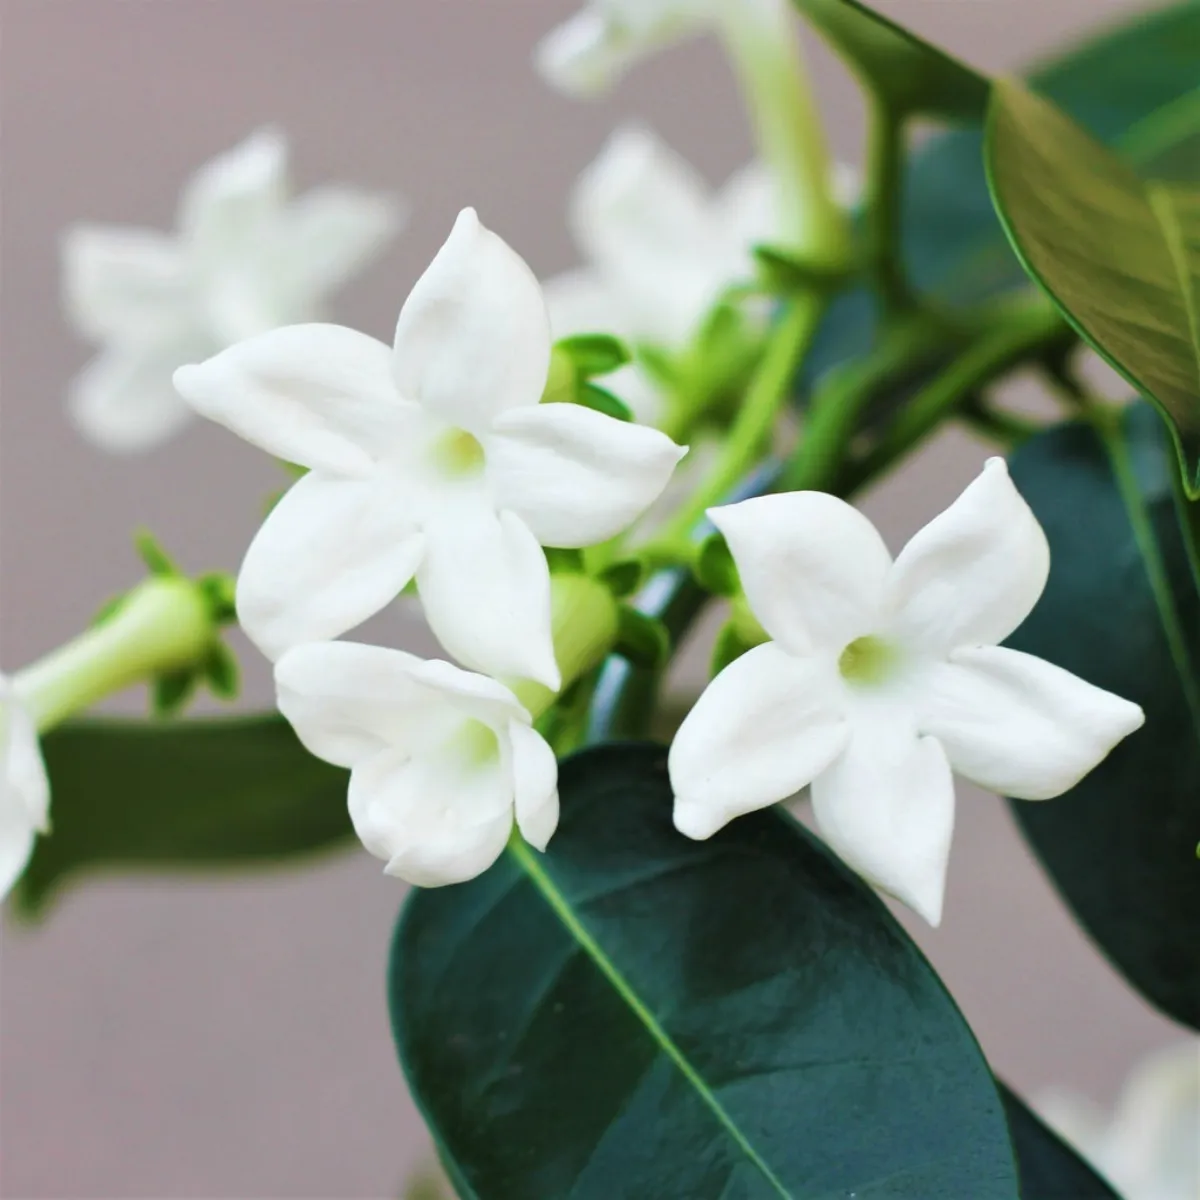 jasmin de madagascar fleurs blanches floraison plante interieur entretien